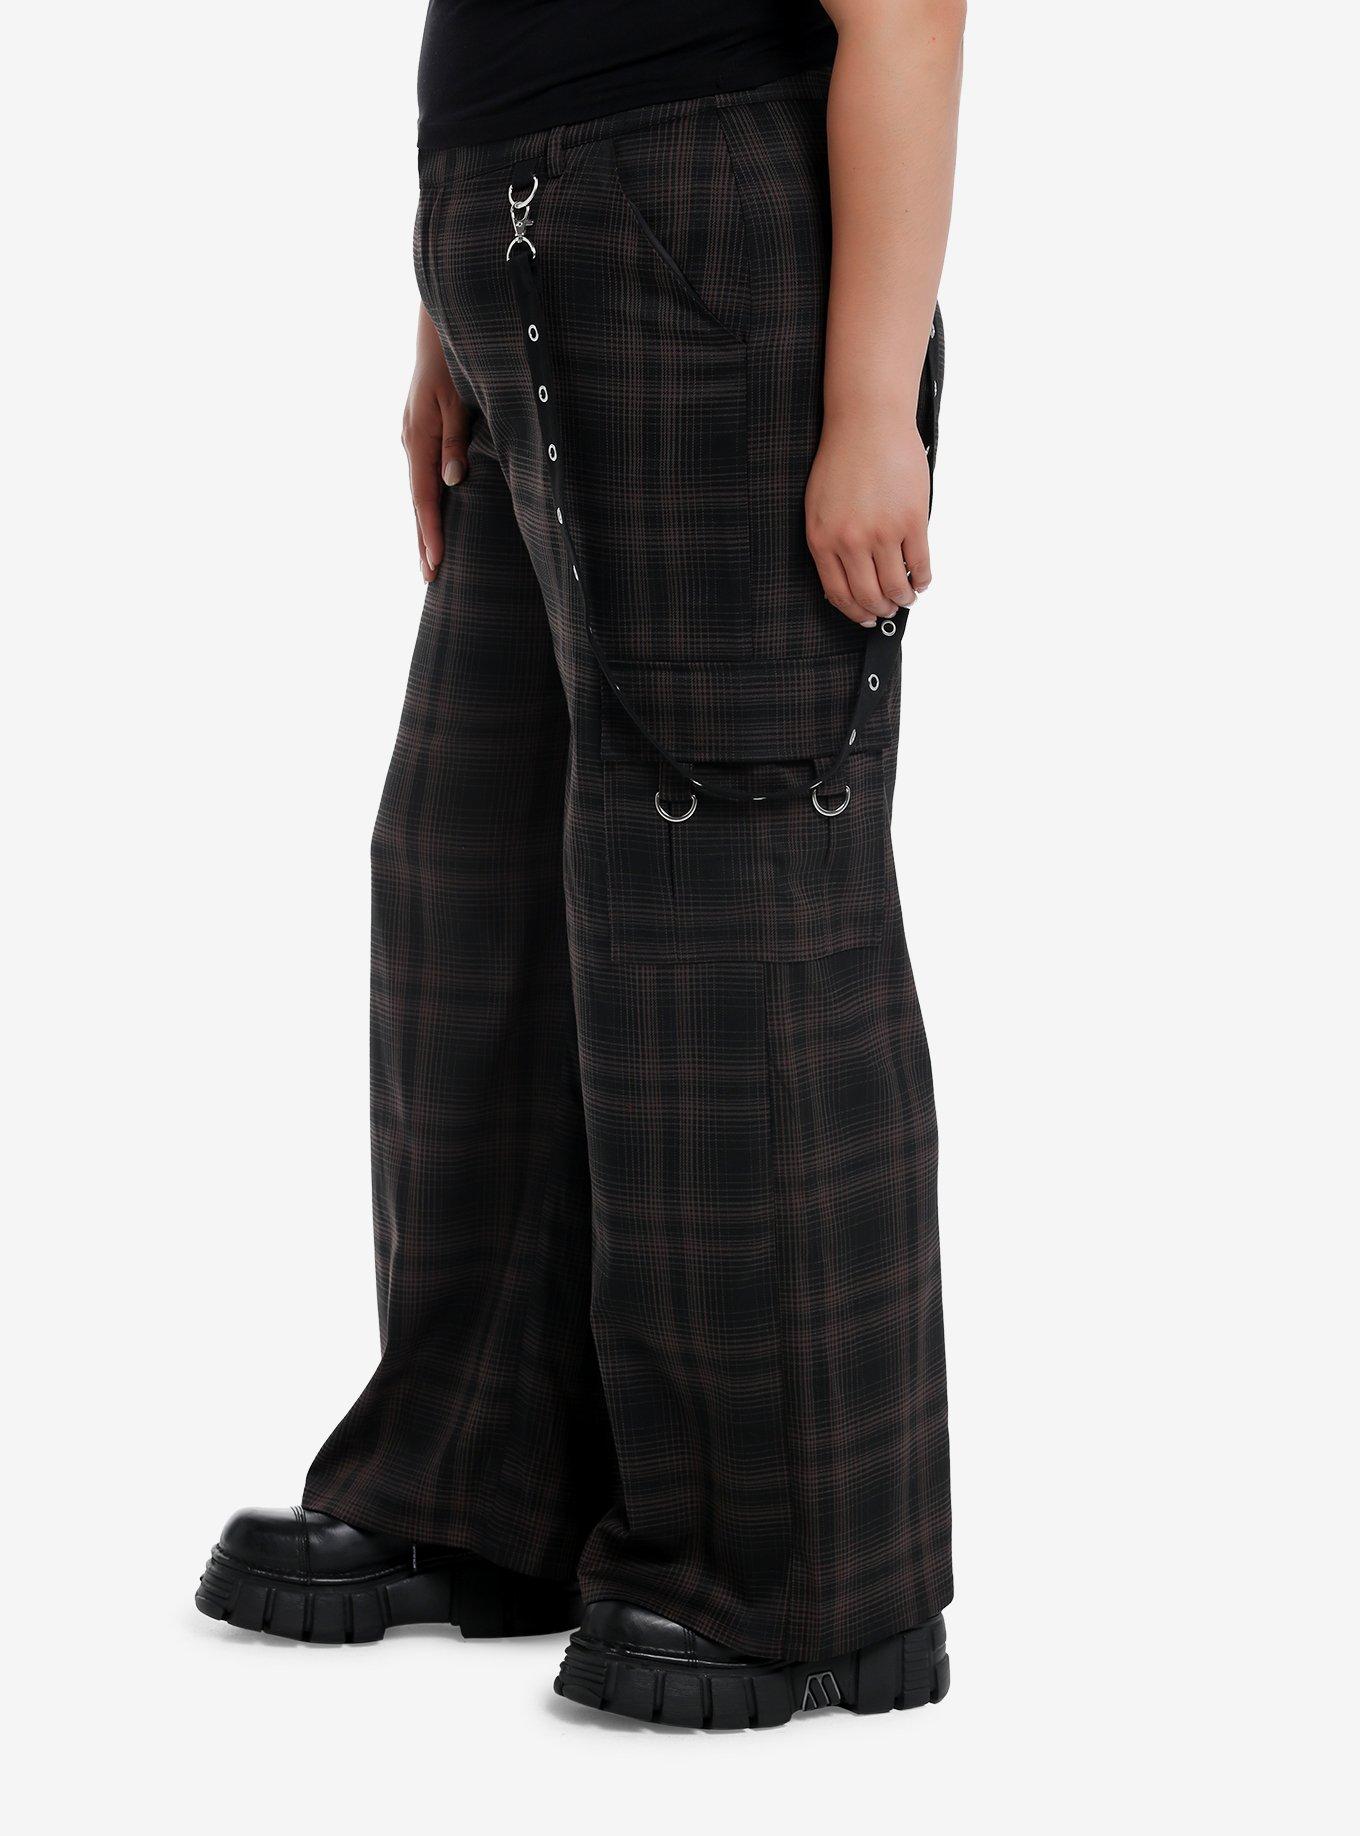 Black & Brown Plaid Grommet Suspender Wide Leg Pants Plus Size, BROWN, alternate